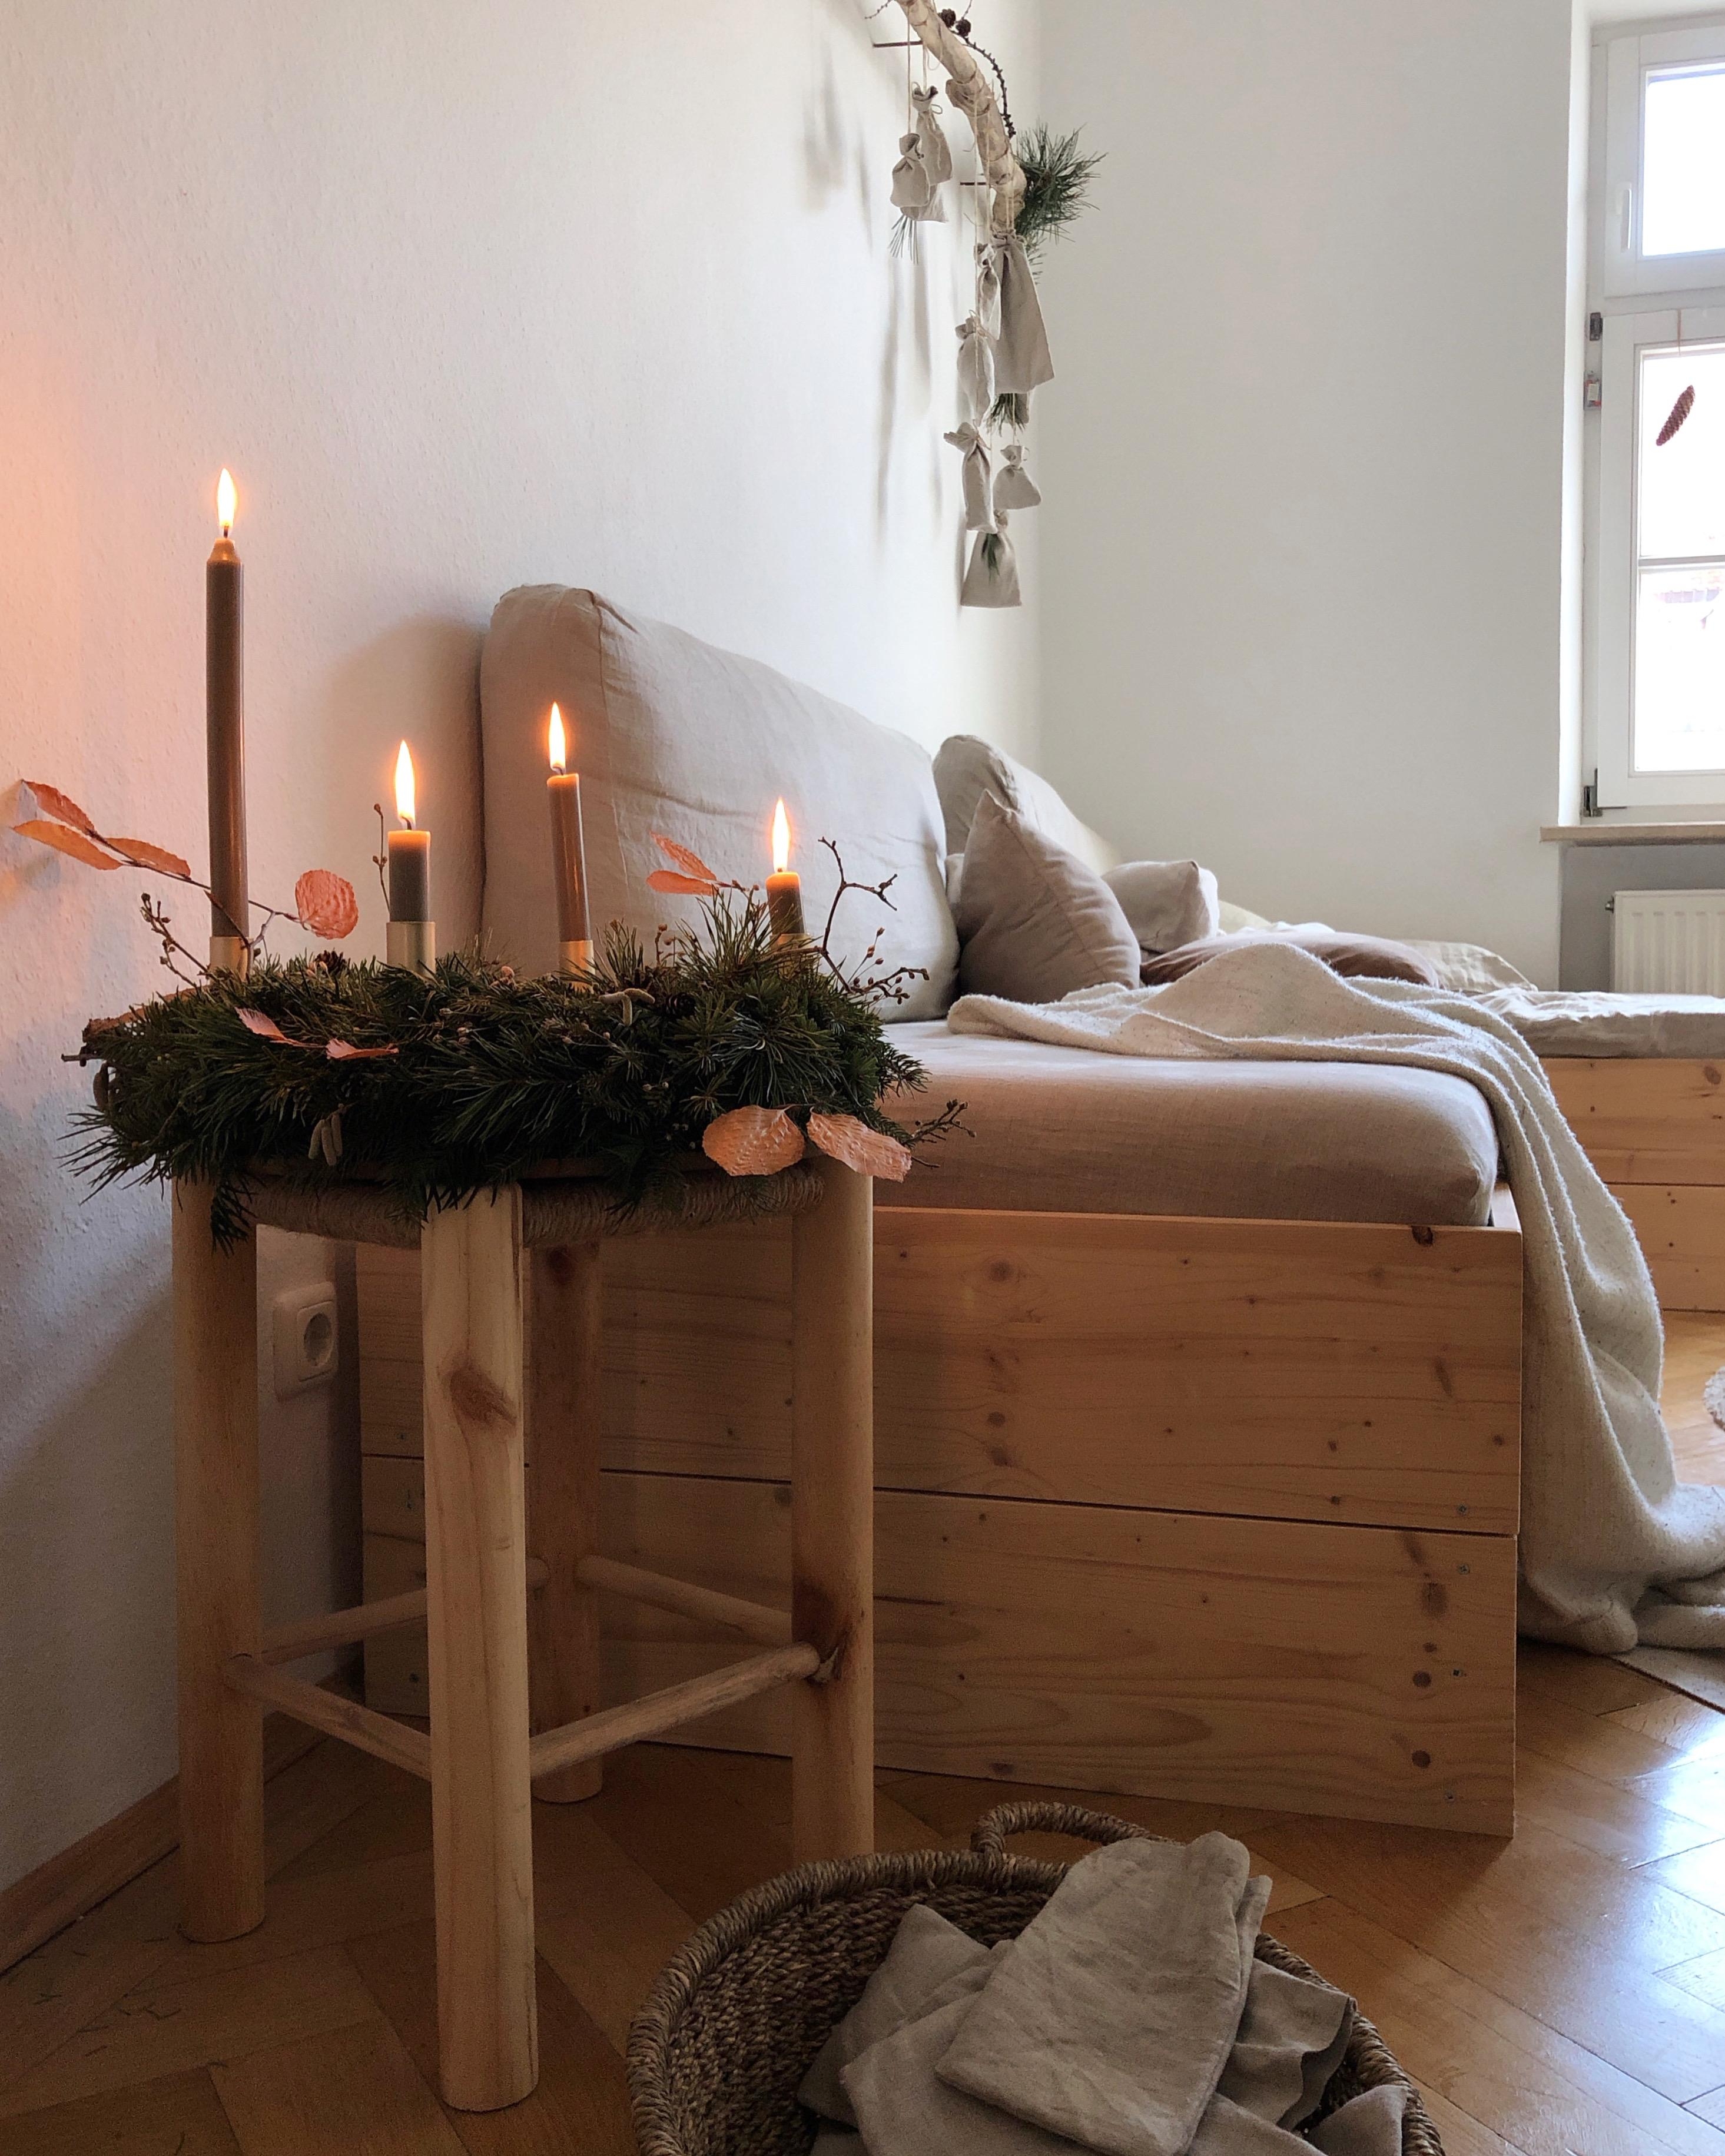 Ich wünsch euch einen schönen vierten Advent 💫. #adventskranz #gemütlich #couch #wohnzimmer #weihnachtsdeko 